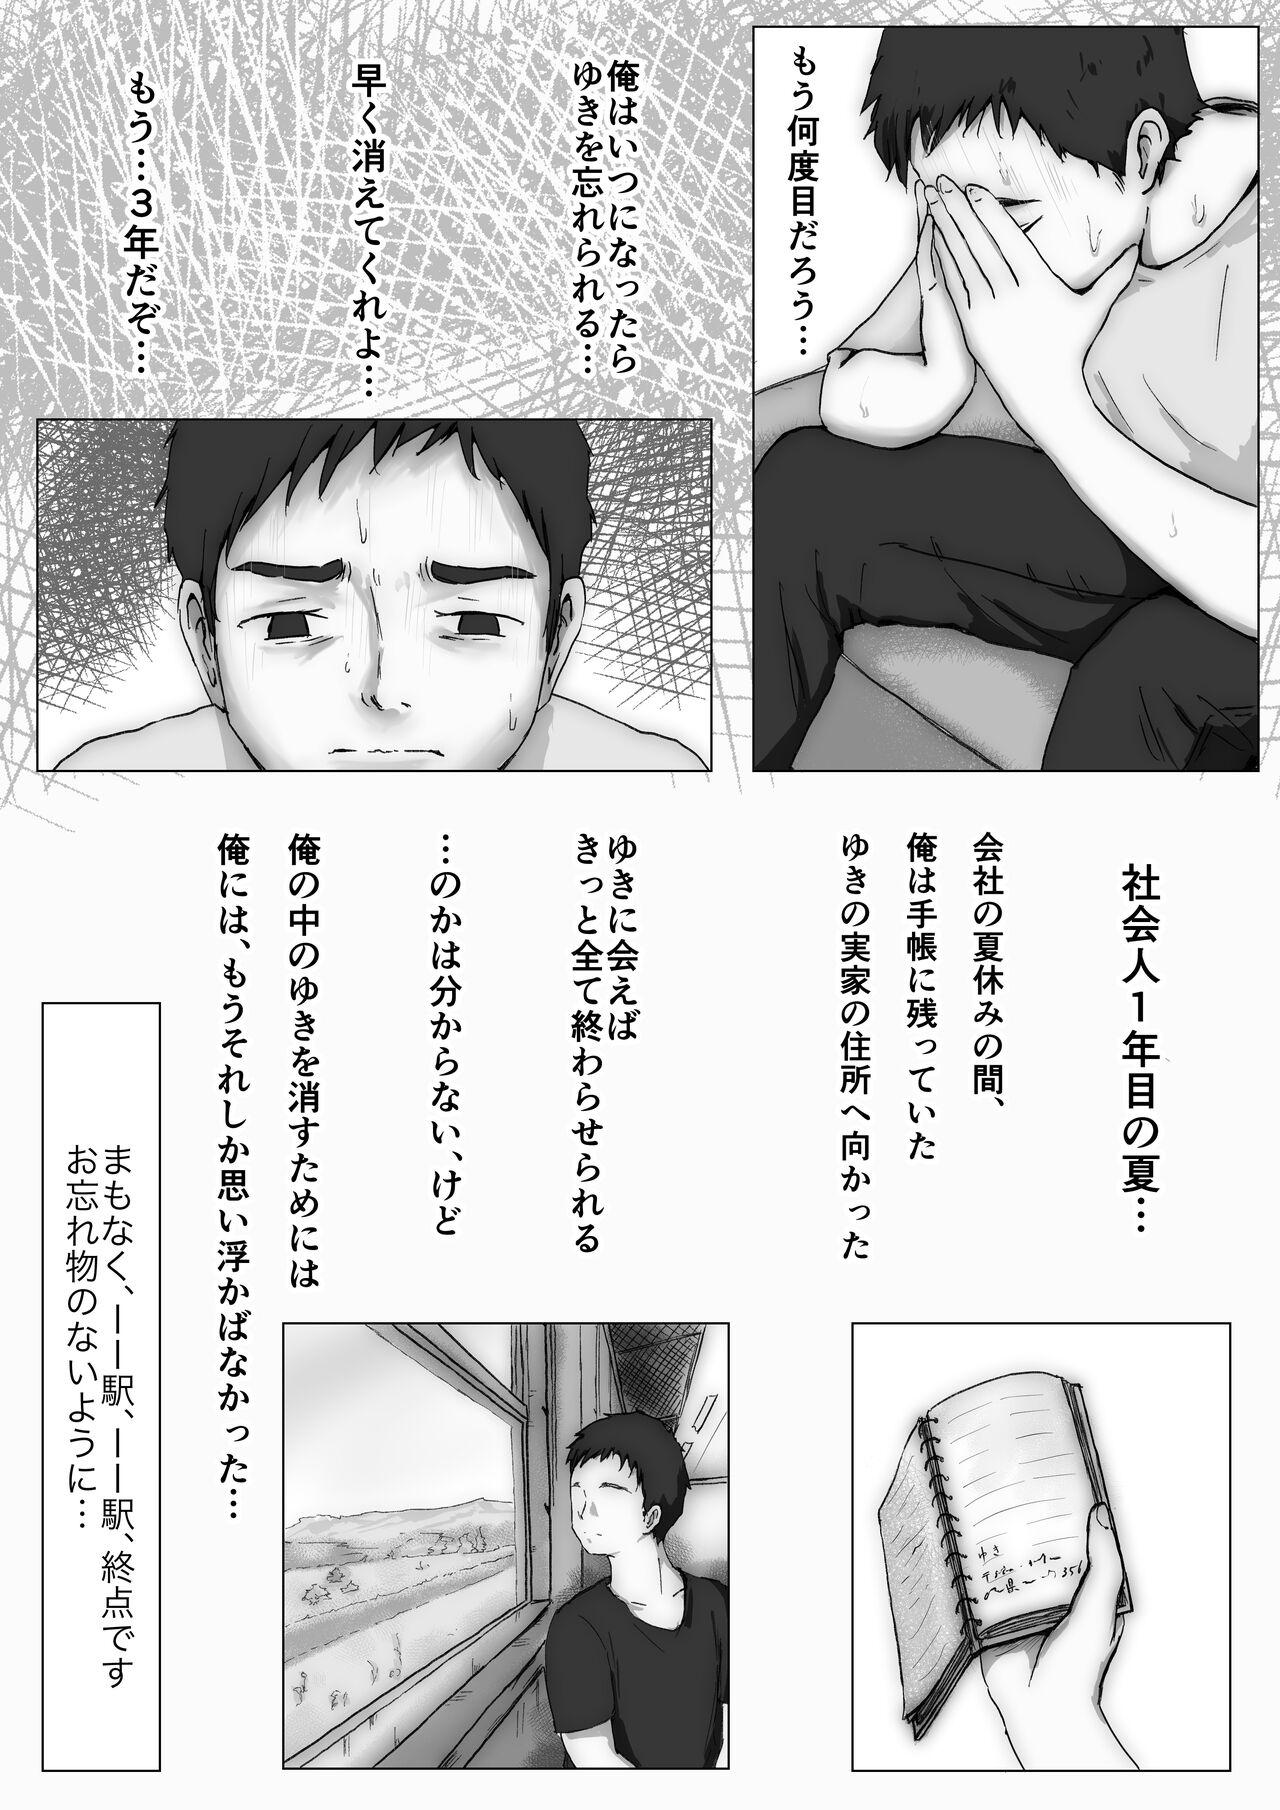 Dorm Honto no Kanojo 3 - Original Teenporno - Page 9